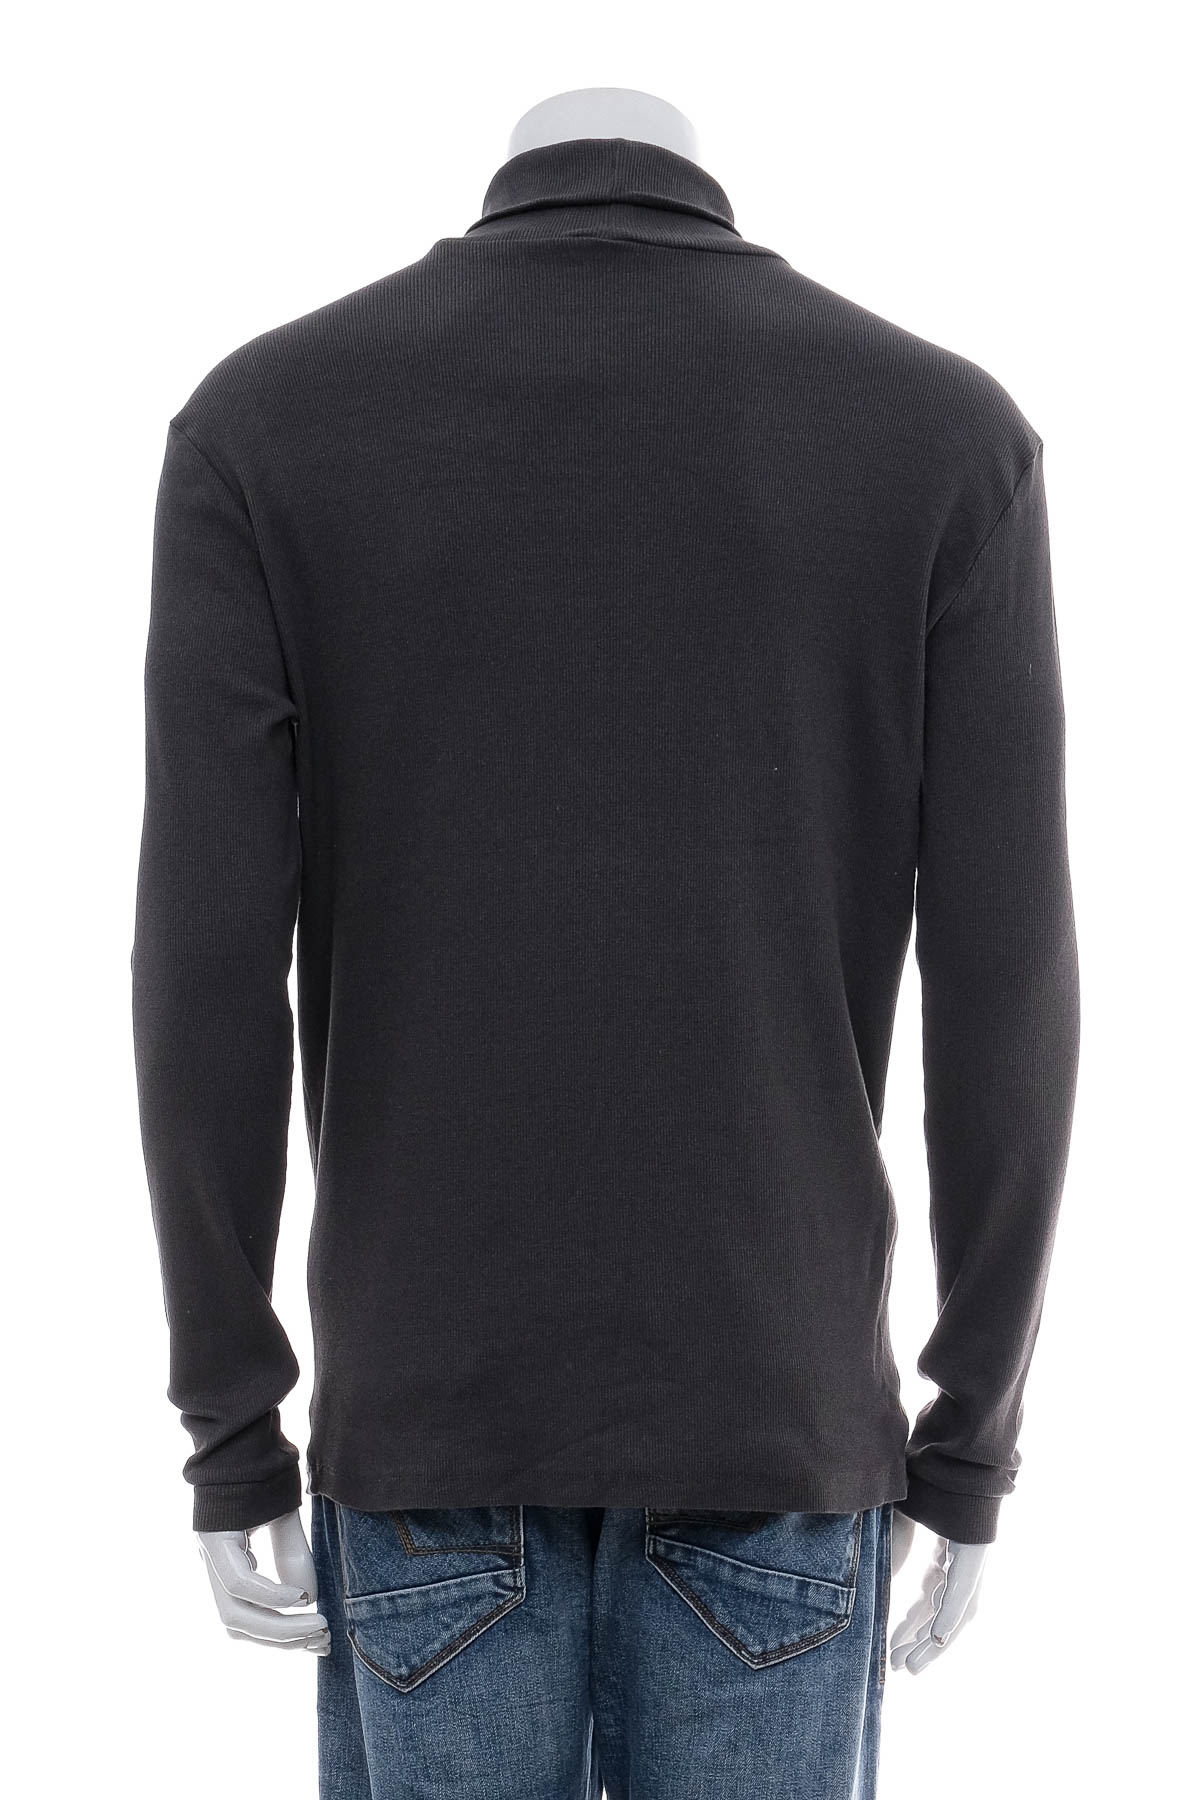 Men's sweater - FSBN - 1